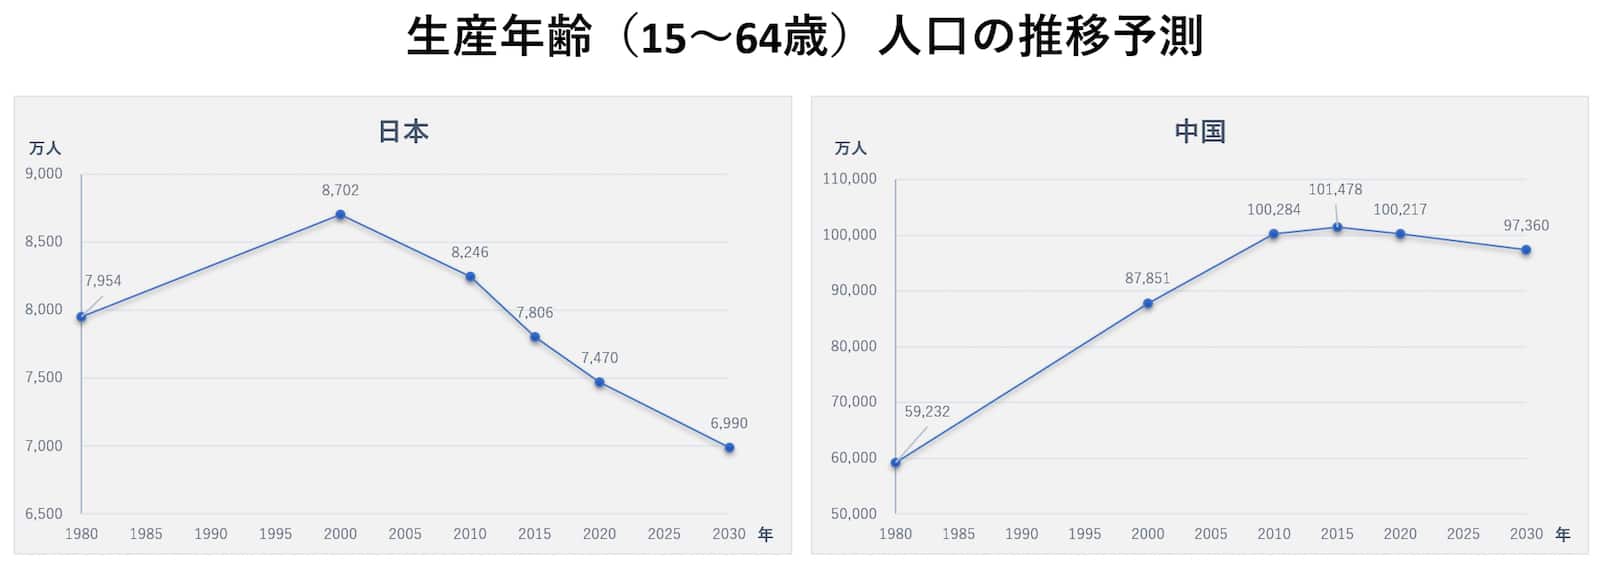 生産年齢（15〜64歳）人口の推移予測（左：日本、右：中国）